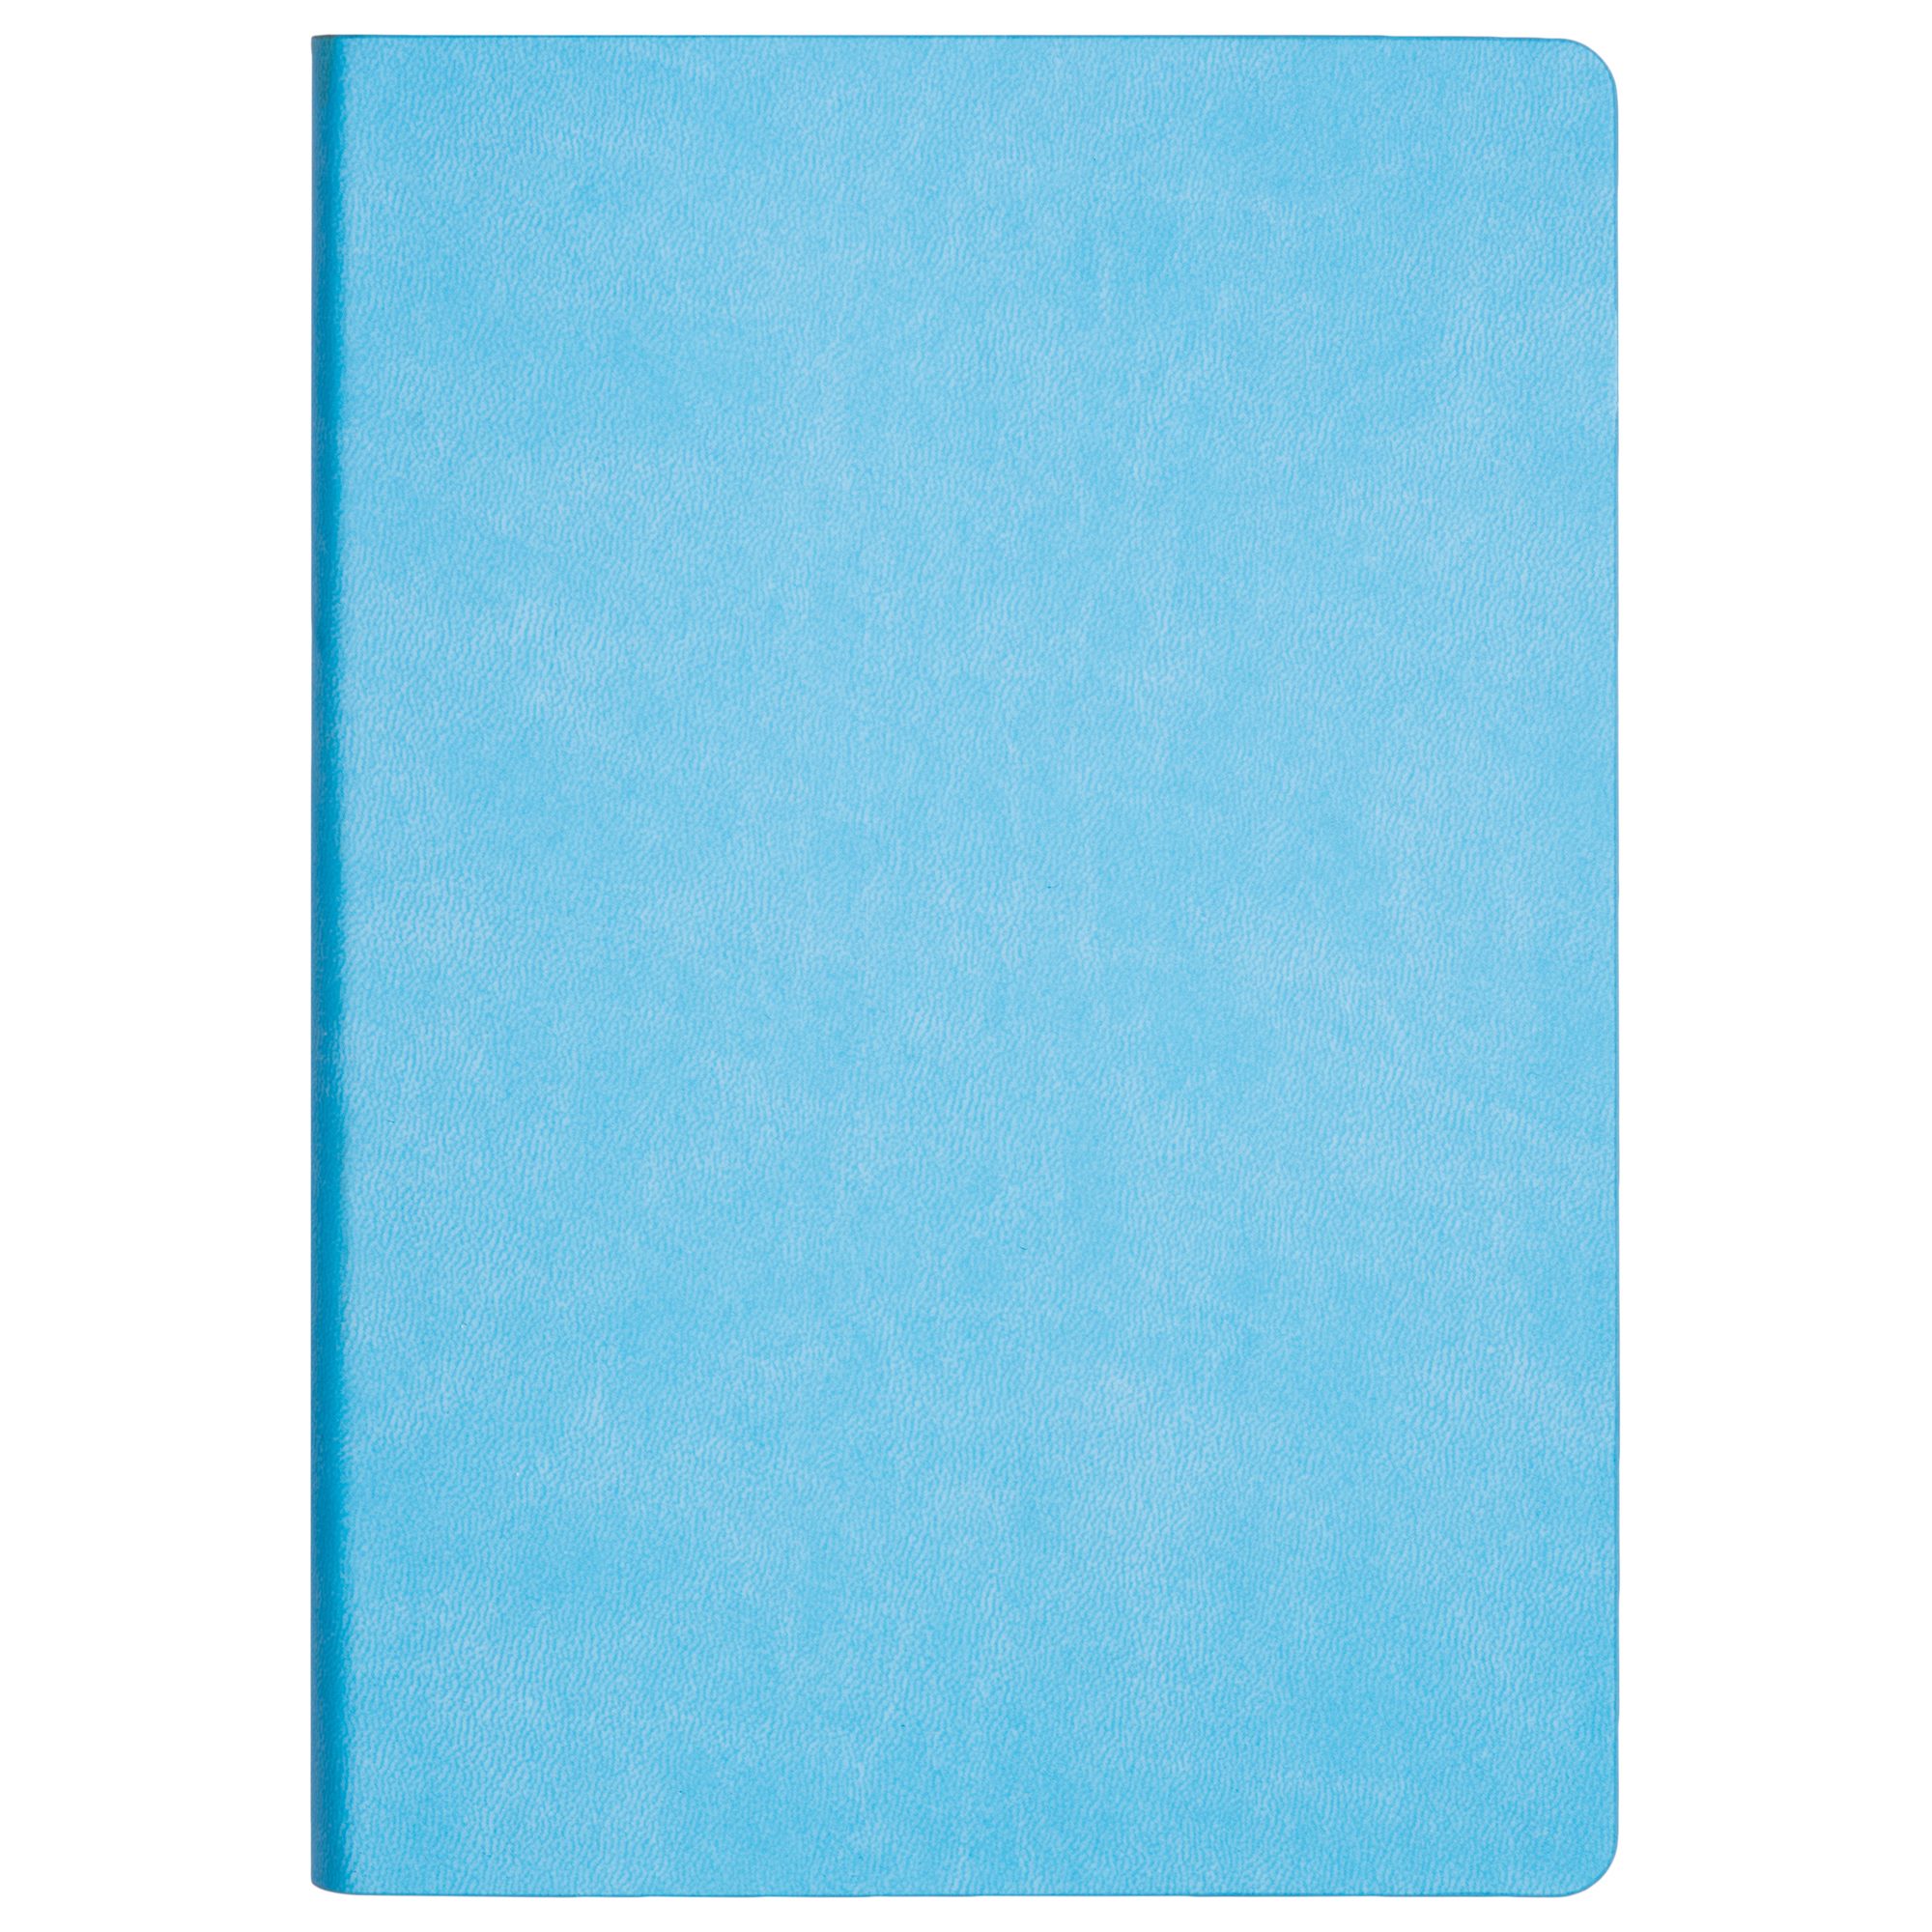 Ежедневник Latte NEW недатированный, голубой/синий (без упаковки, без стикера)